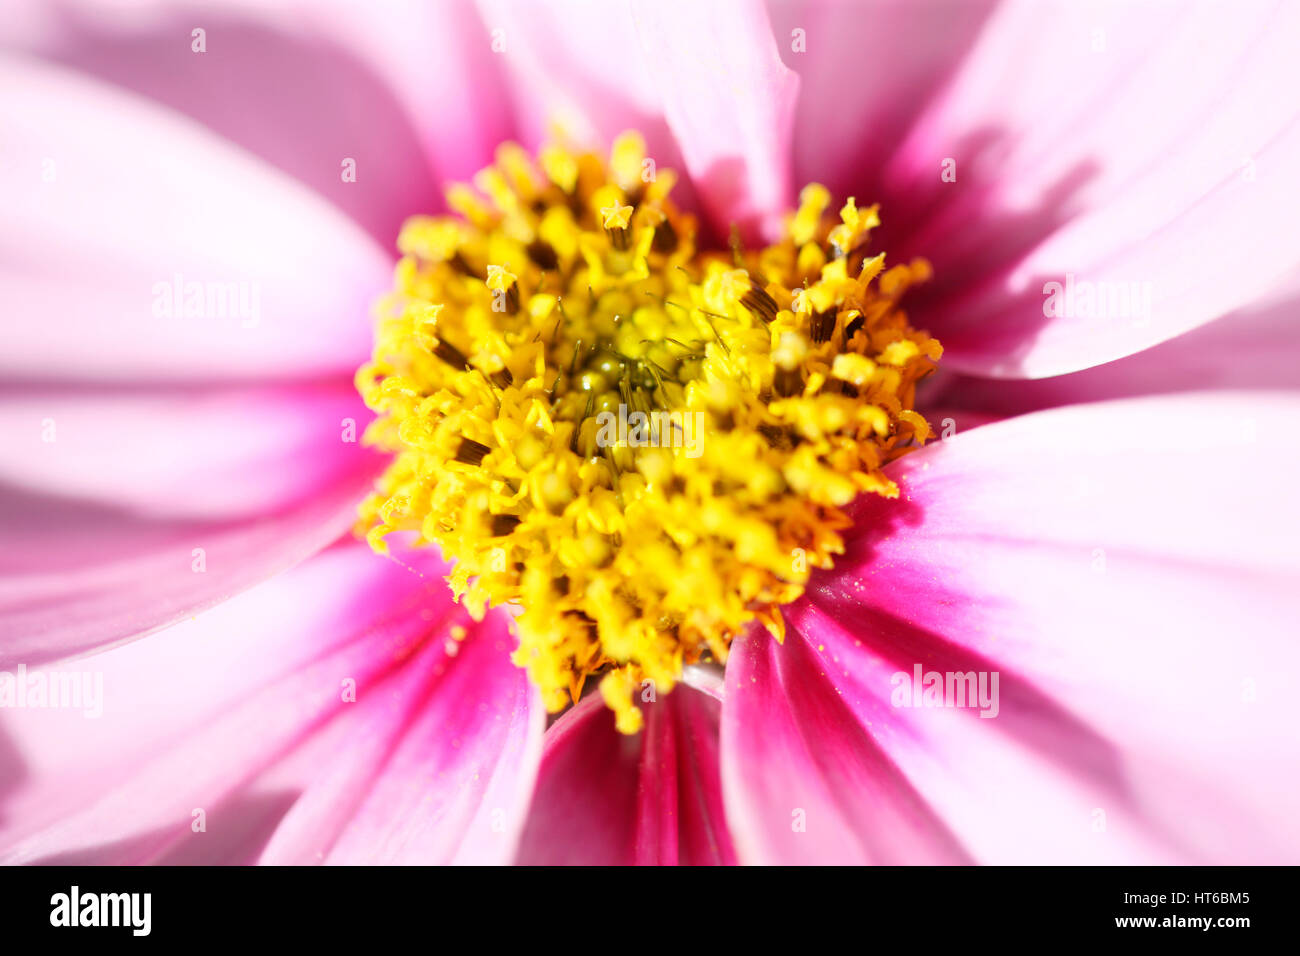 Kosmos Sonate zarten rosa Blüten Anfang Herbst Sonnenlicht, ergreifende herzförmigen Mitte - Liebe und Mitgefühl Jane Ann Butler Fotografie JABP1864 Stockfoto